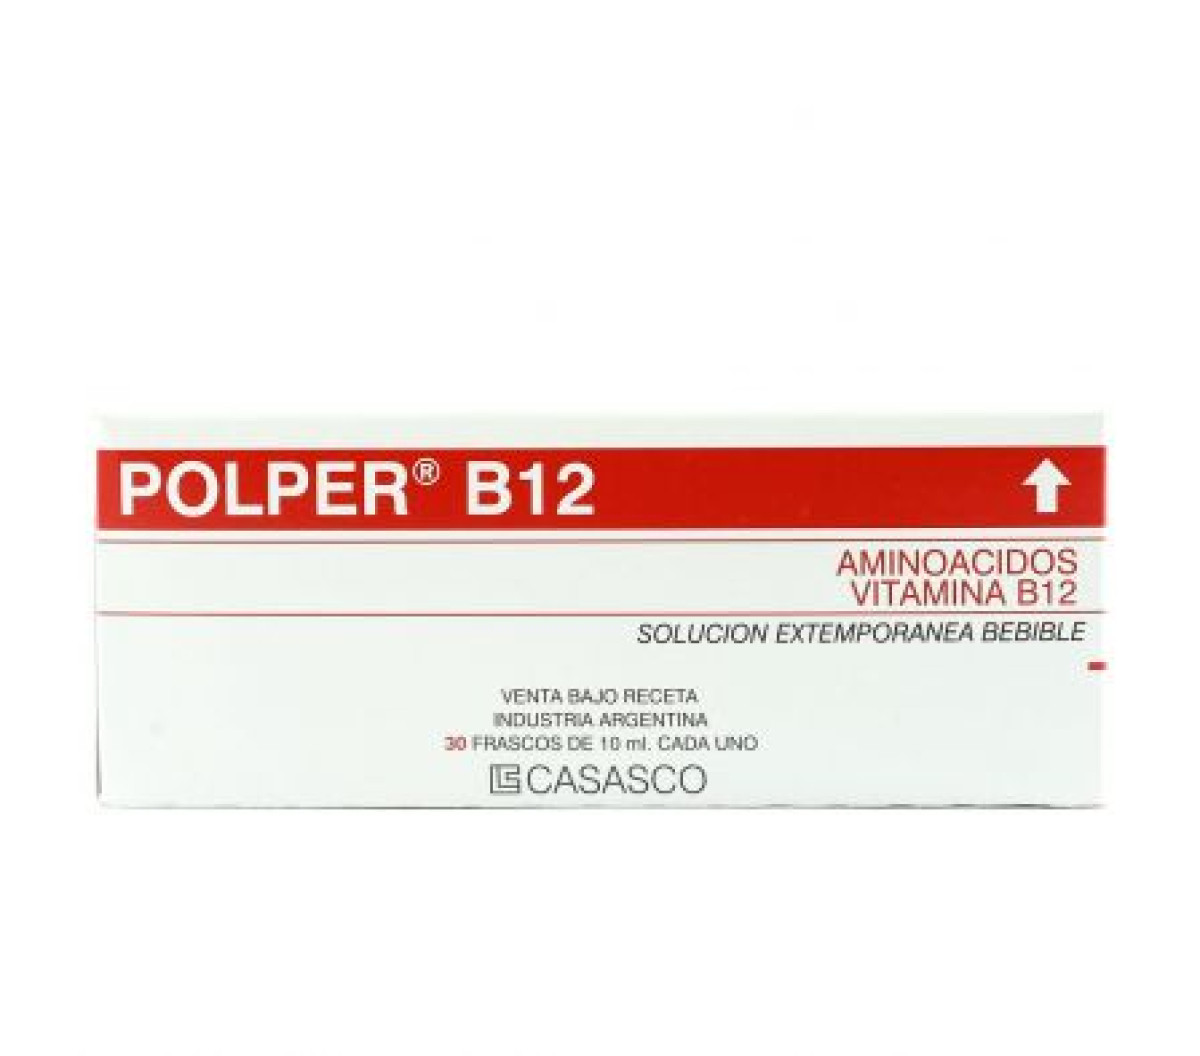 POLPER B12 X 30 AMP BBLES X 10 ML